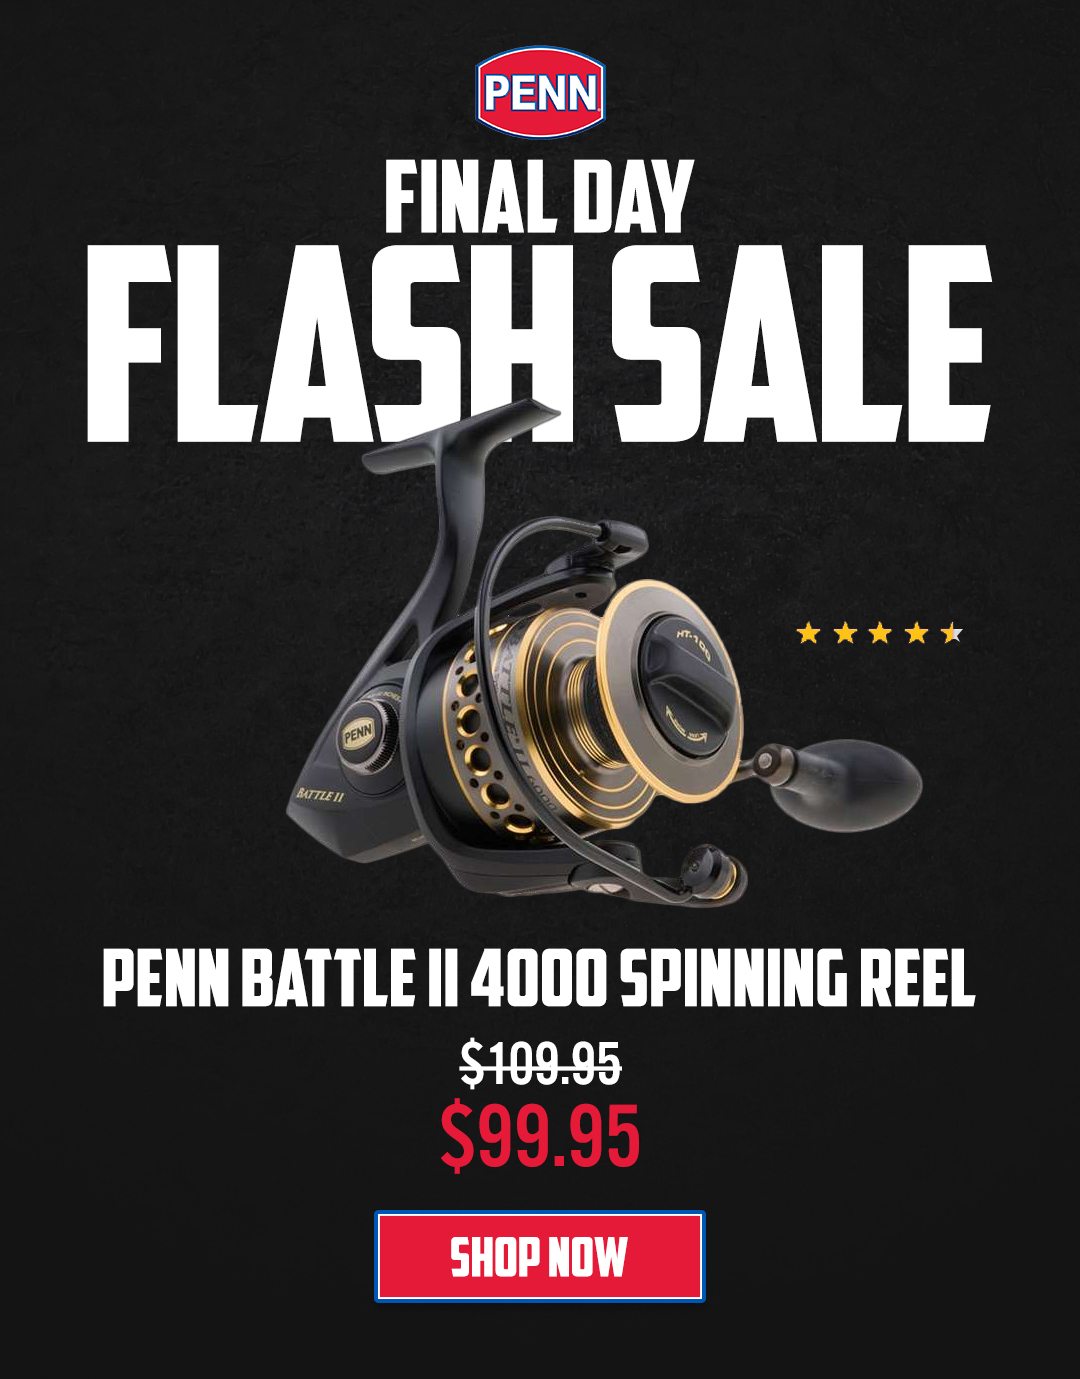 48 Hour Flash Sale - Penn Battle II 4000 Spinning Reel